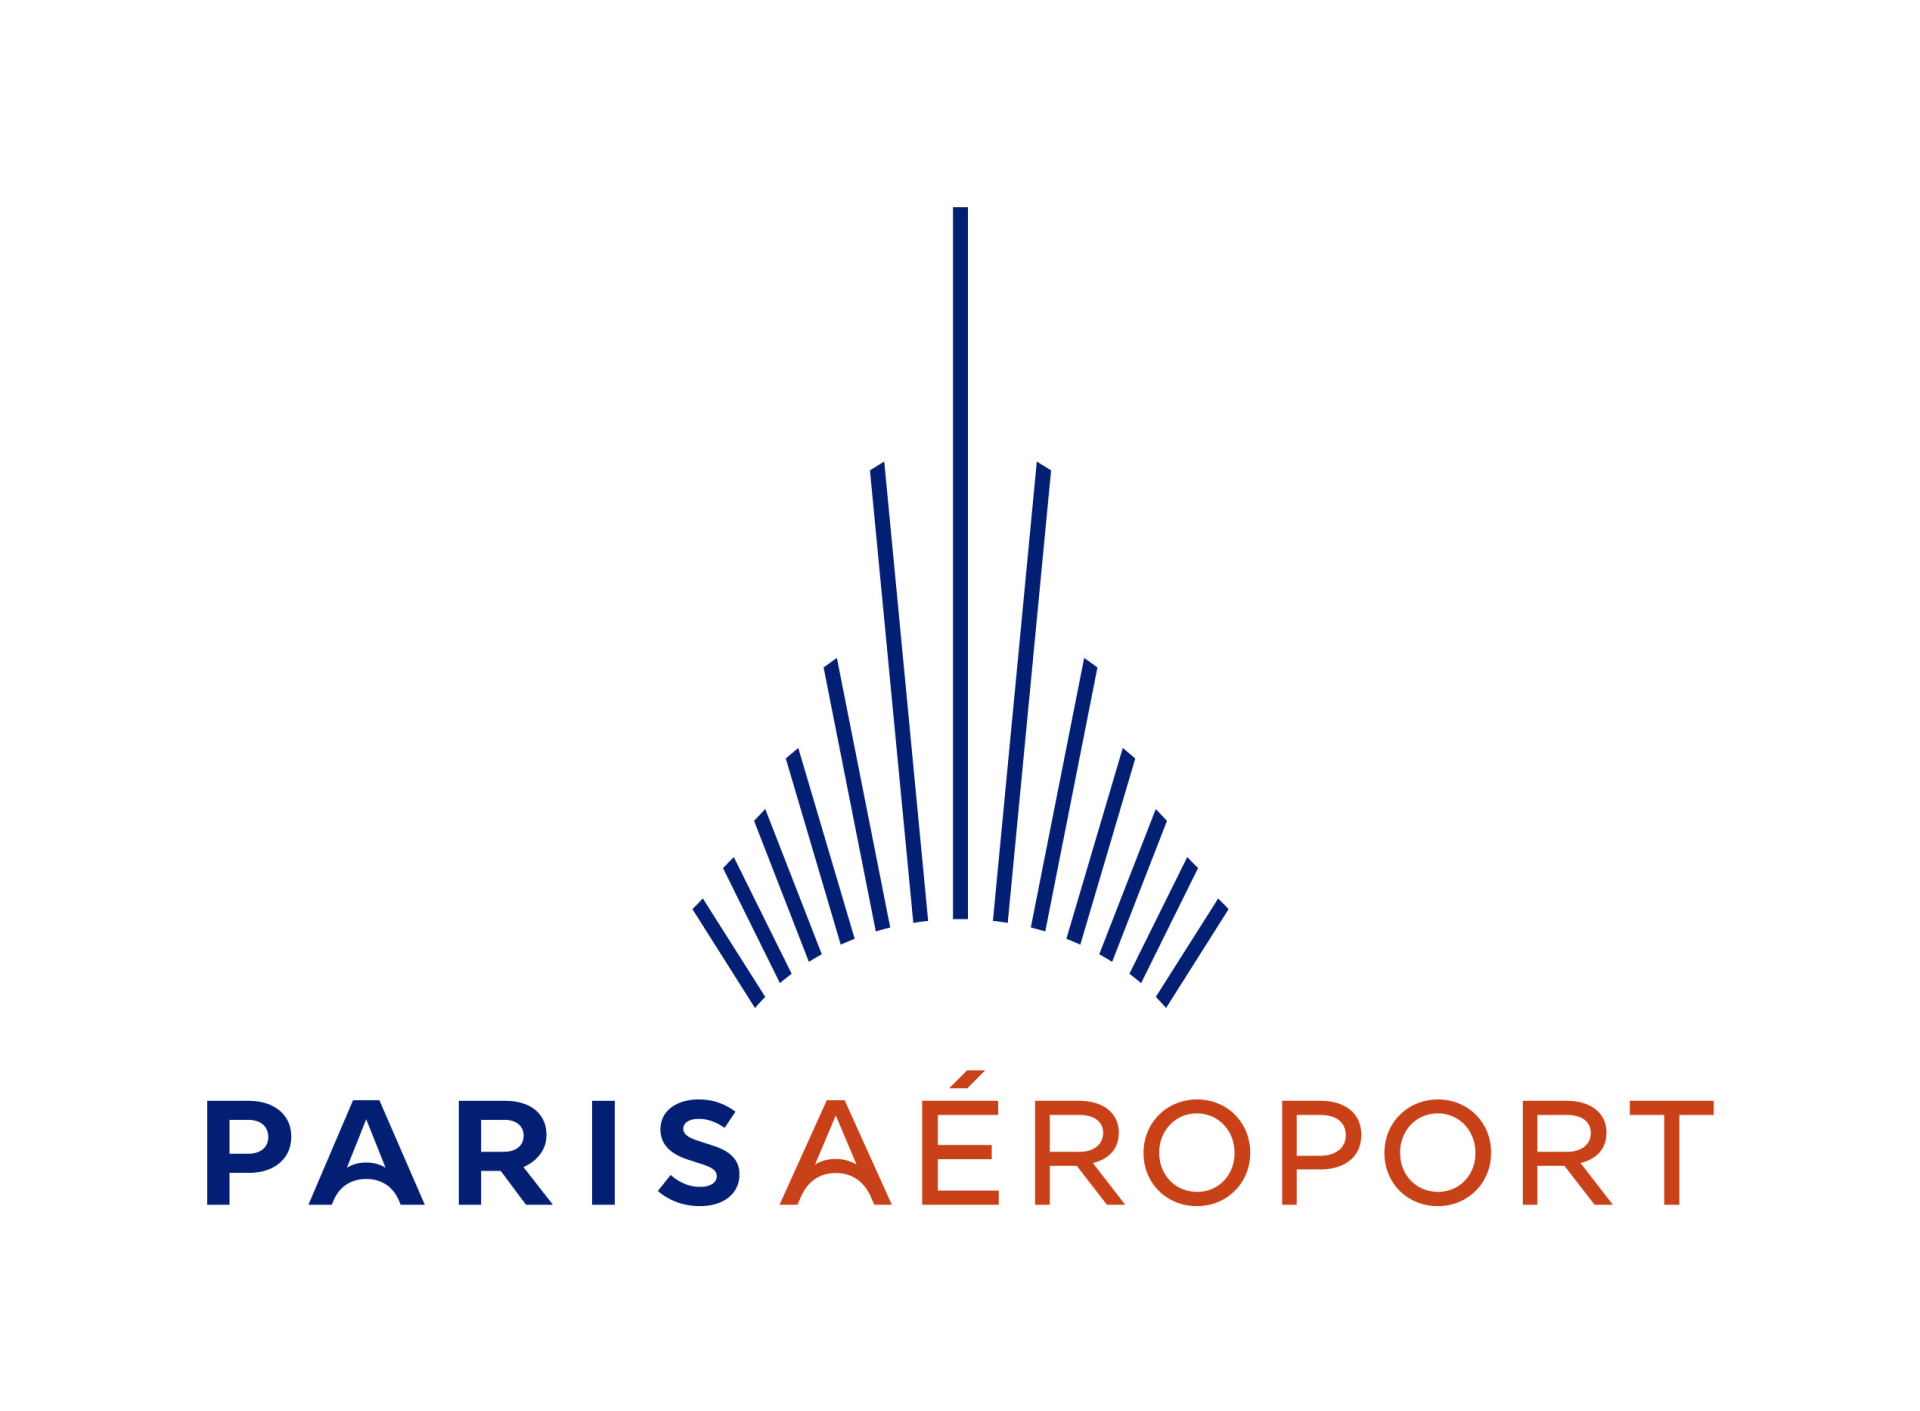 Audace dagir partenaire Paris Aéroport